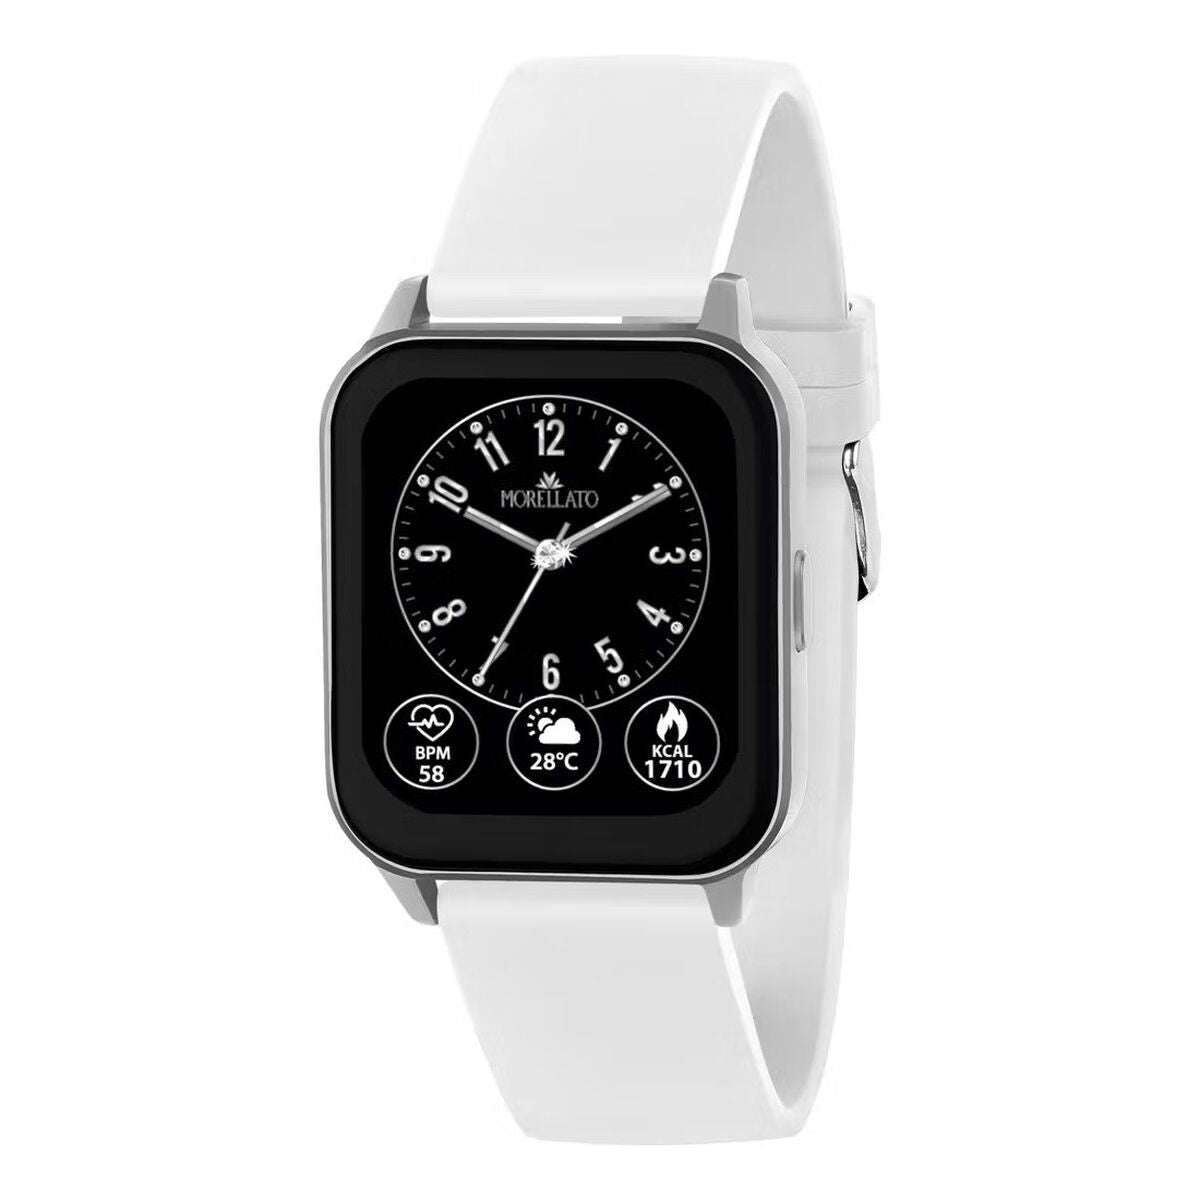 Kaufe Smartwatch Morellato R0151170502 bei AWK Flagship um € 85.00